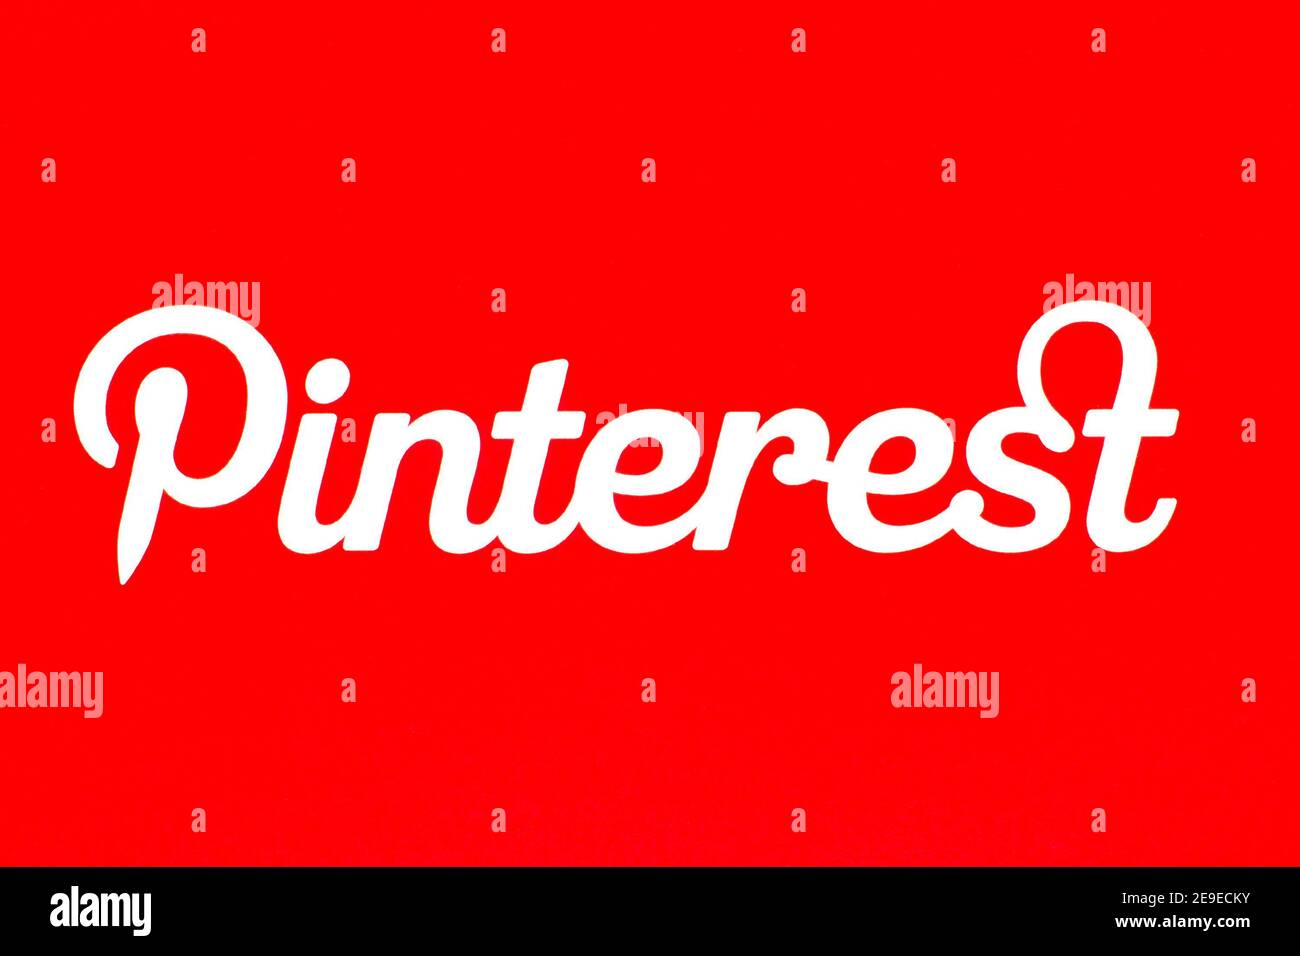 Pinterest-Logo auf Papier gedruckt. Facebook ist ein Online-Dienst für soziale Netzwerke und Microblogging. Stockfoto